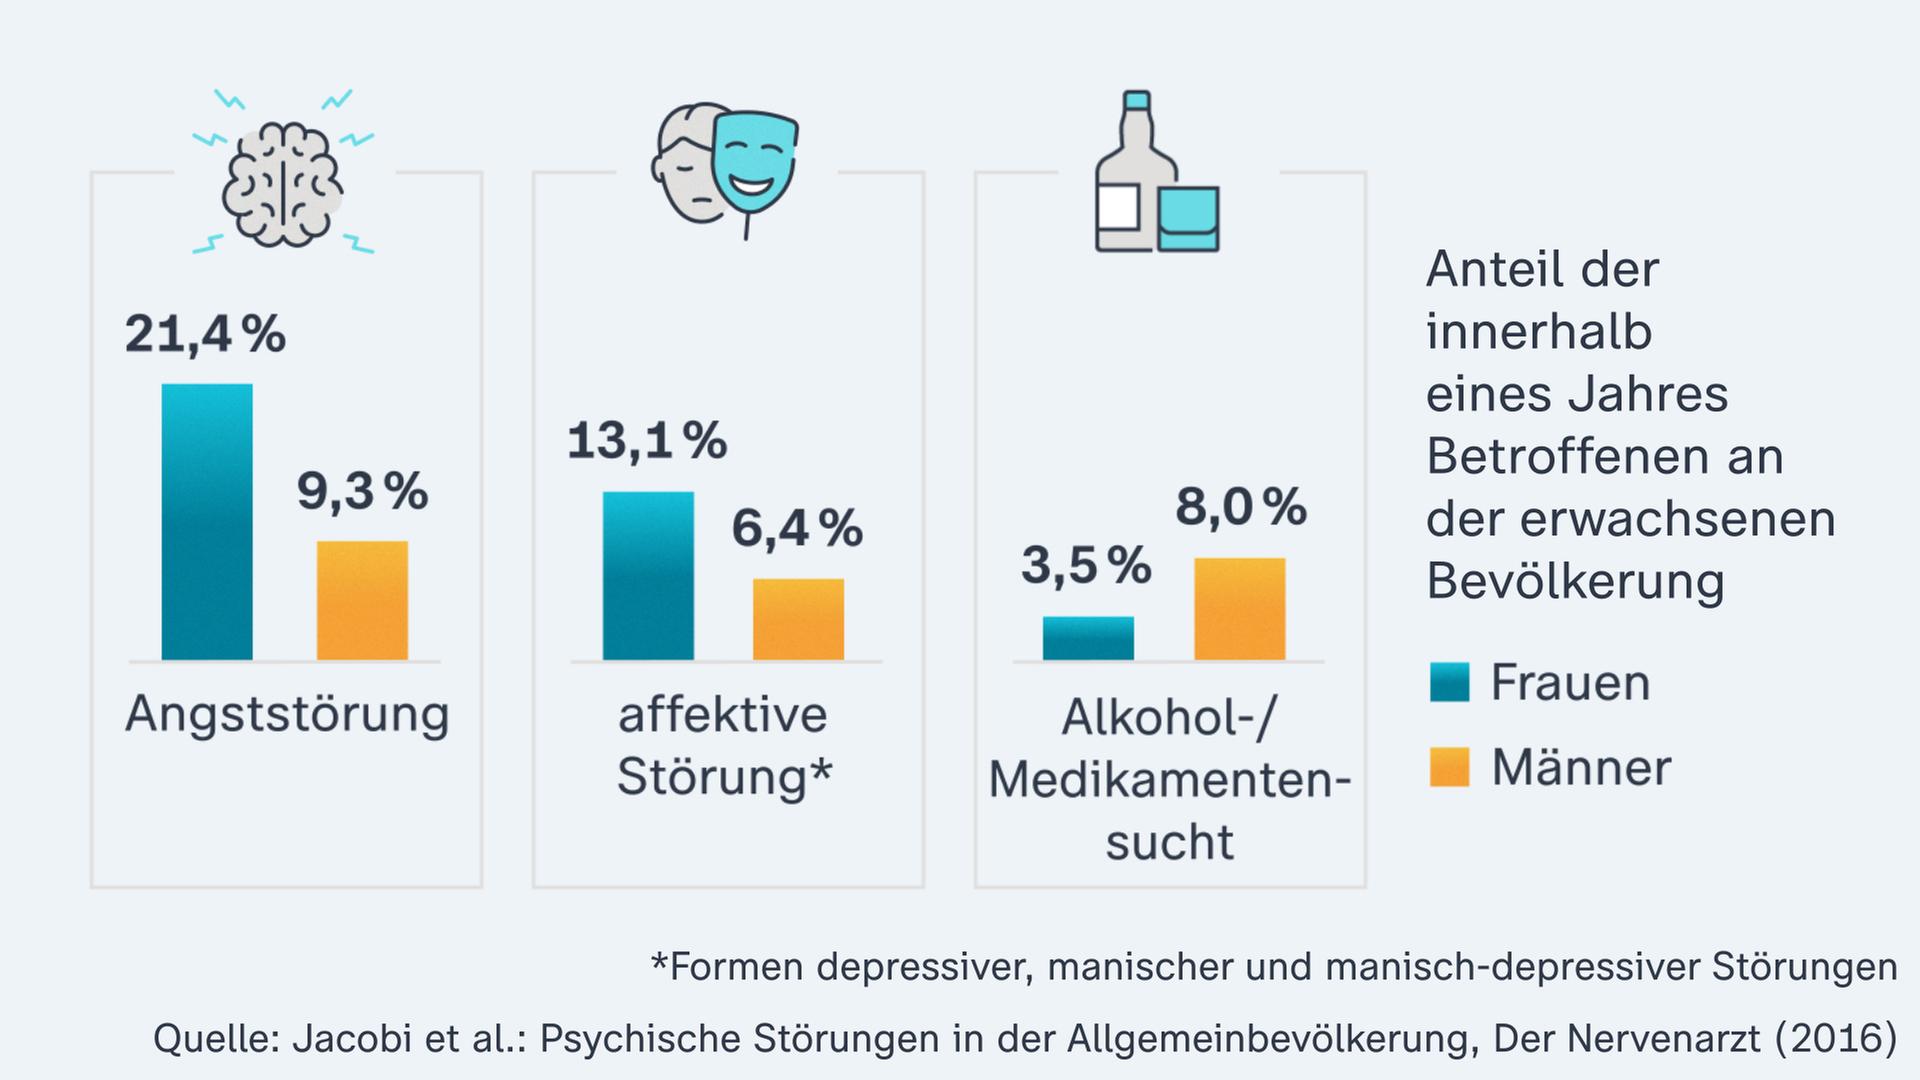 Die Grafik zeigt die häufigsten psychischen Störungen in Deutschland: Angststörungen, affektive Störungen wie Depressionen und Alkohol- bzw. Medikamentensucht.